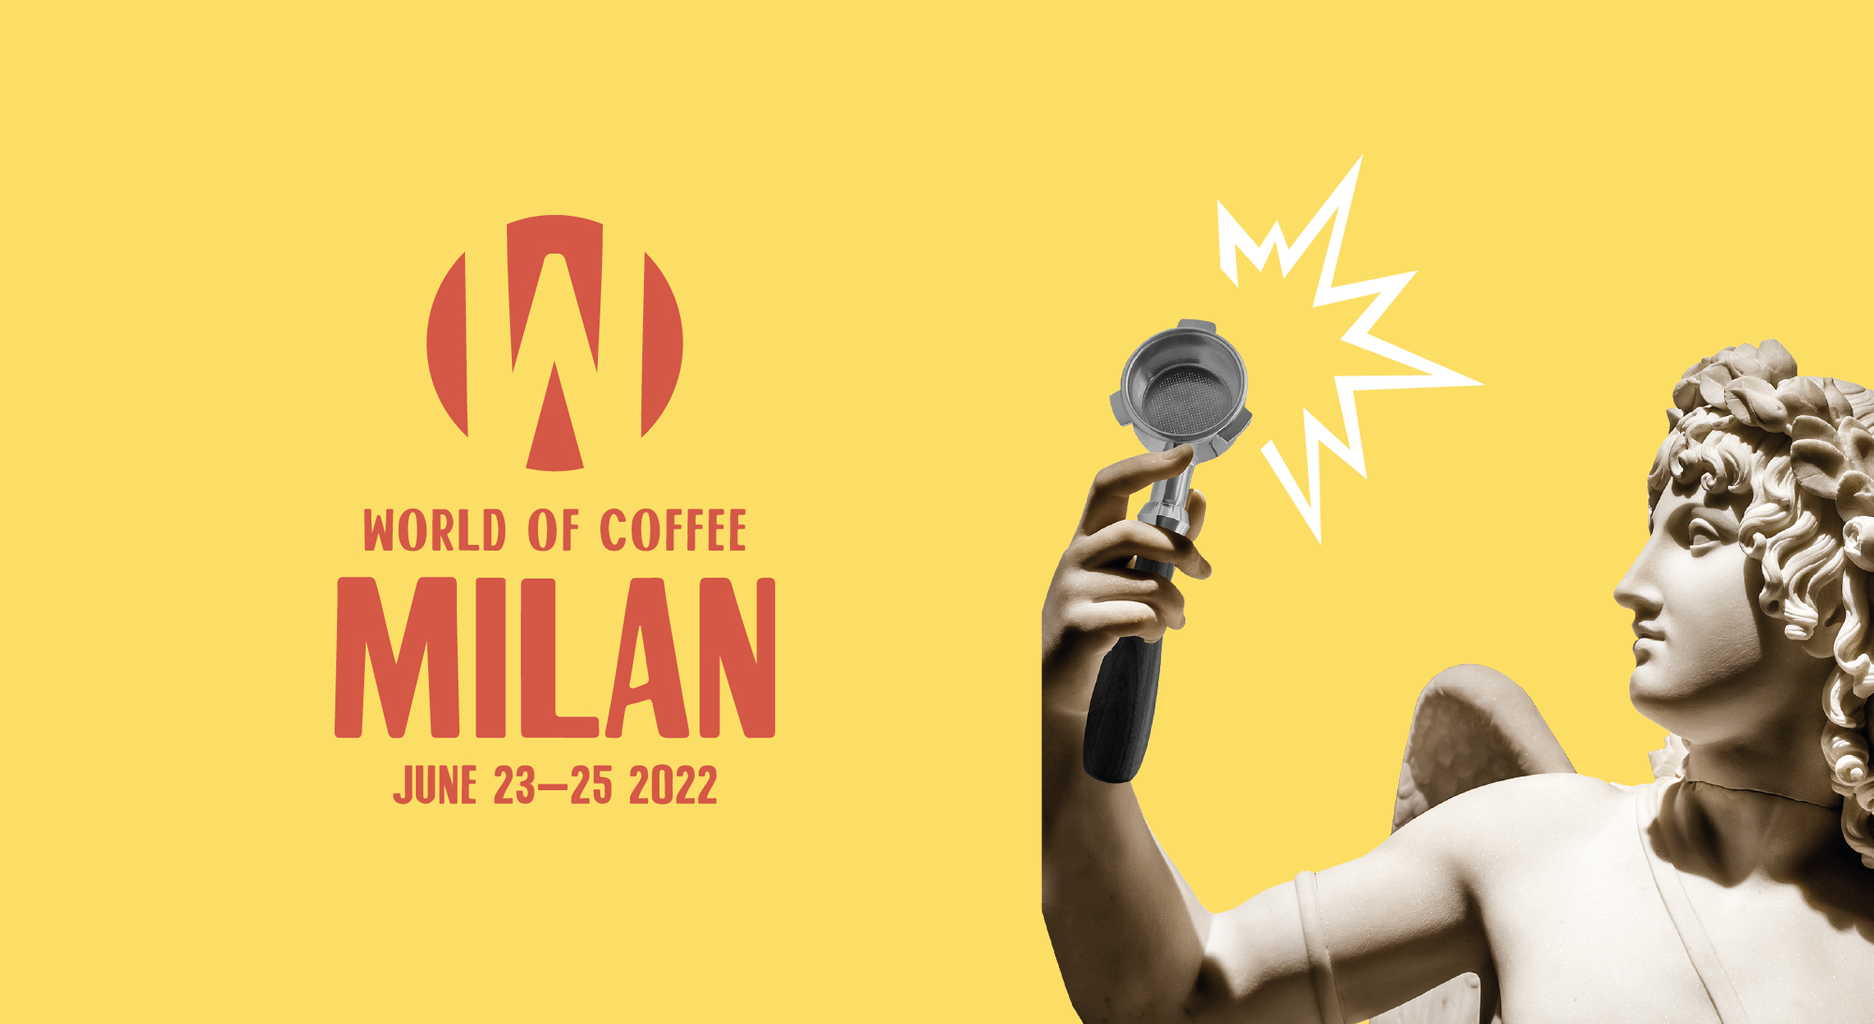 Visit Anfim at World of Coffee Milan 2022 